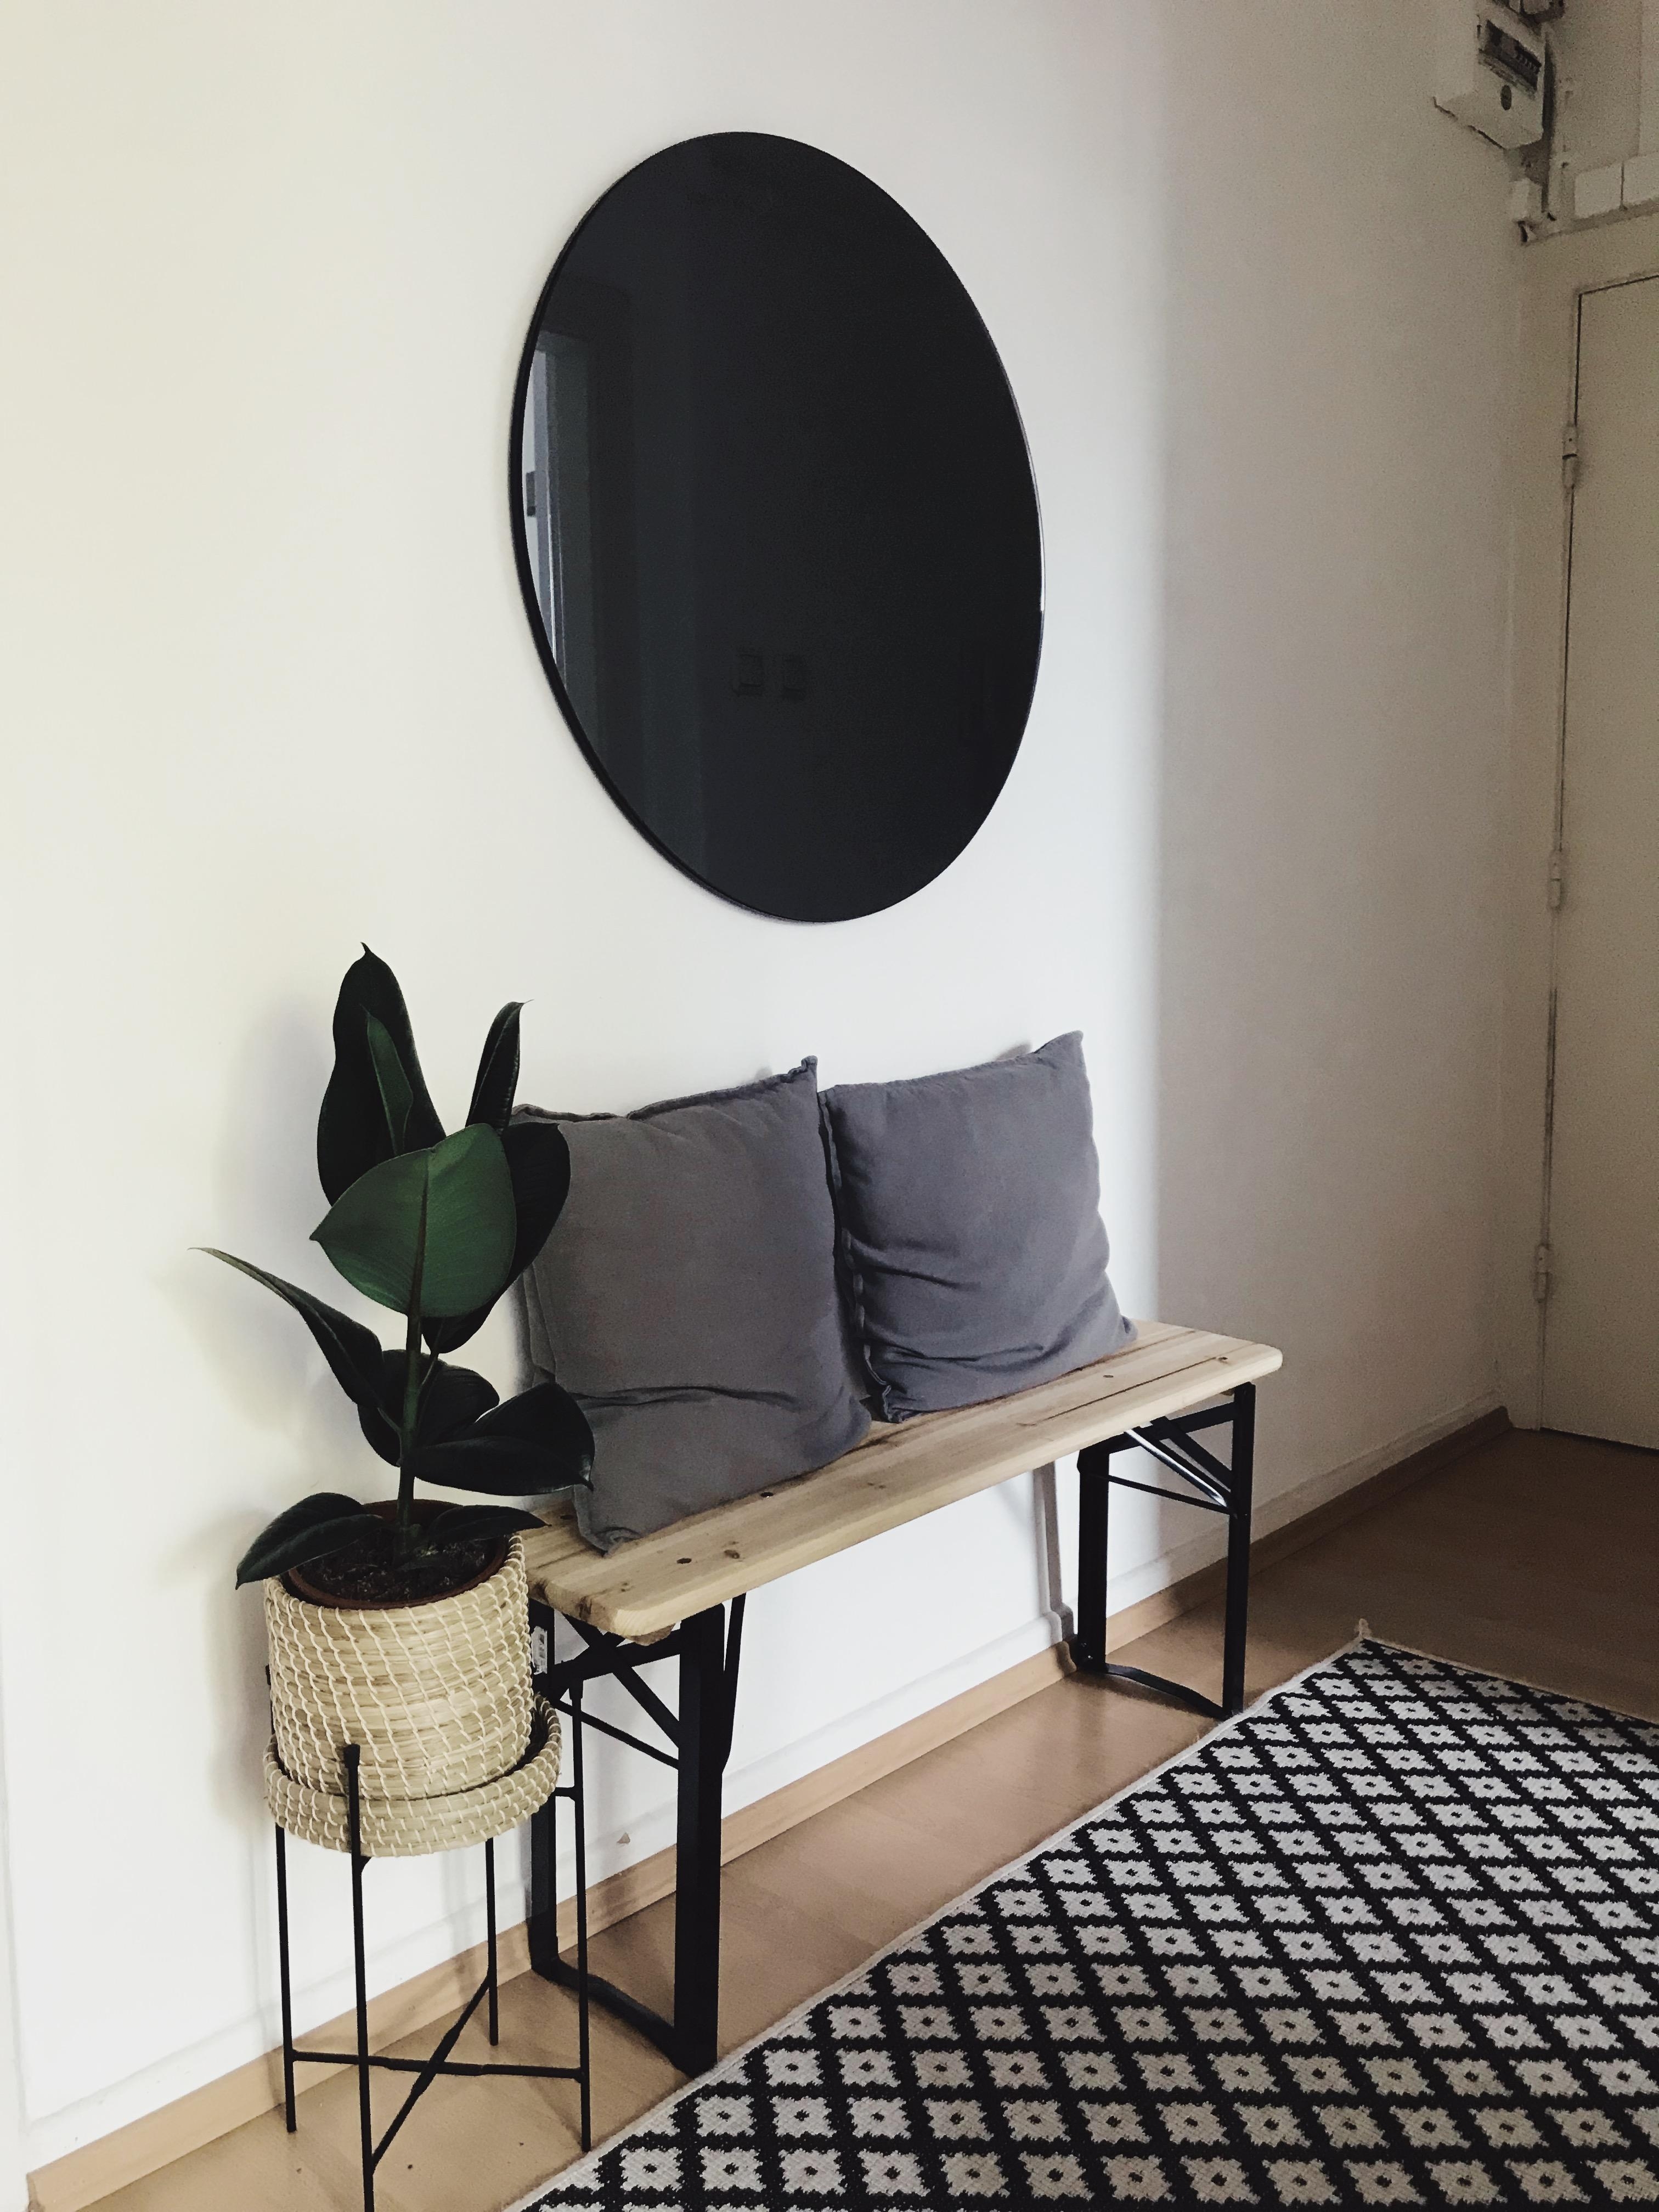 Unser neuer Eingangsbereich mit meinem absoluten Lieblingsspiegel! #couchliebt #mirror #scandi